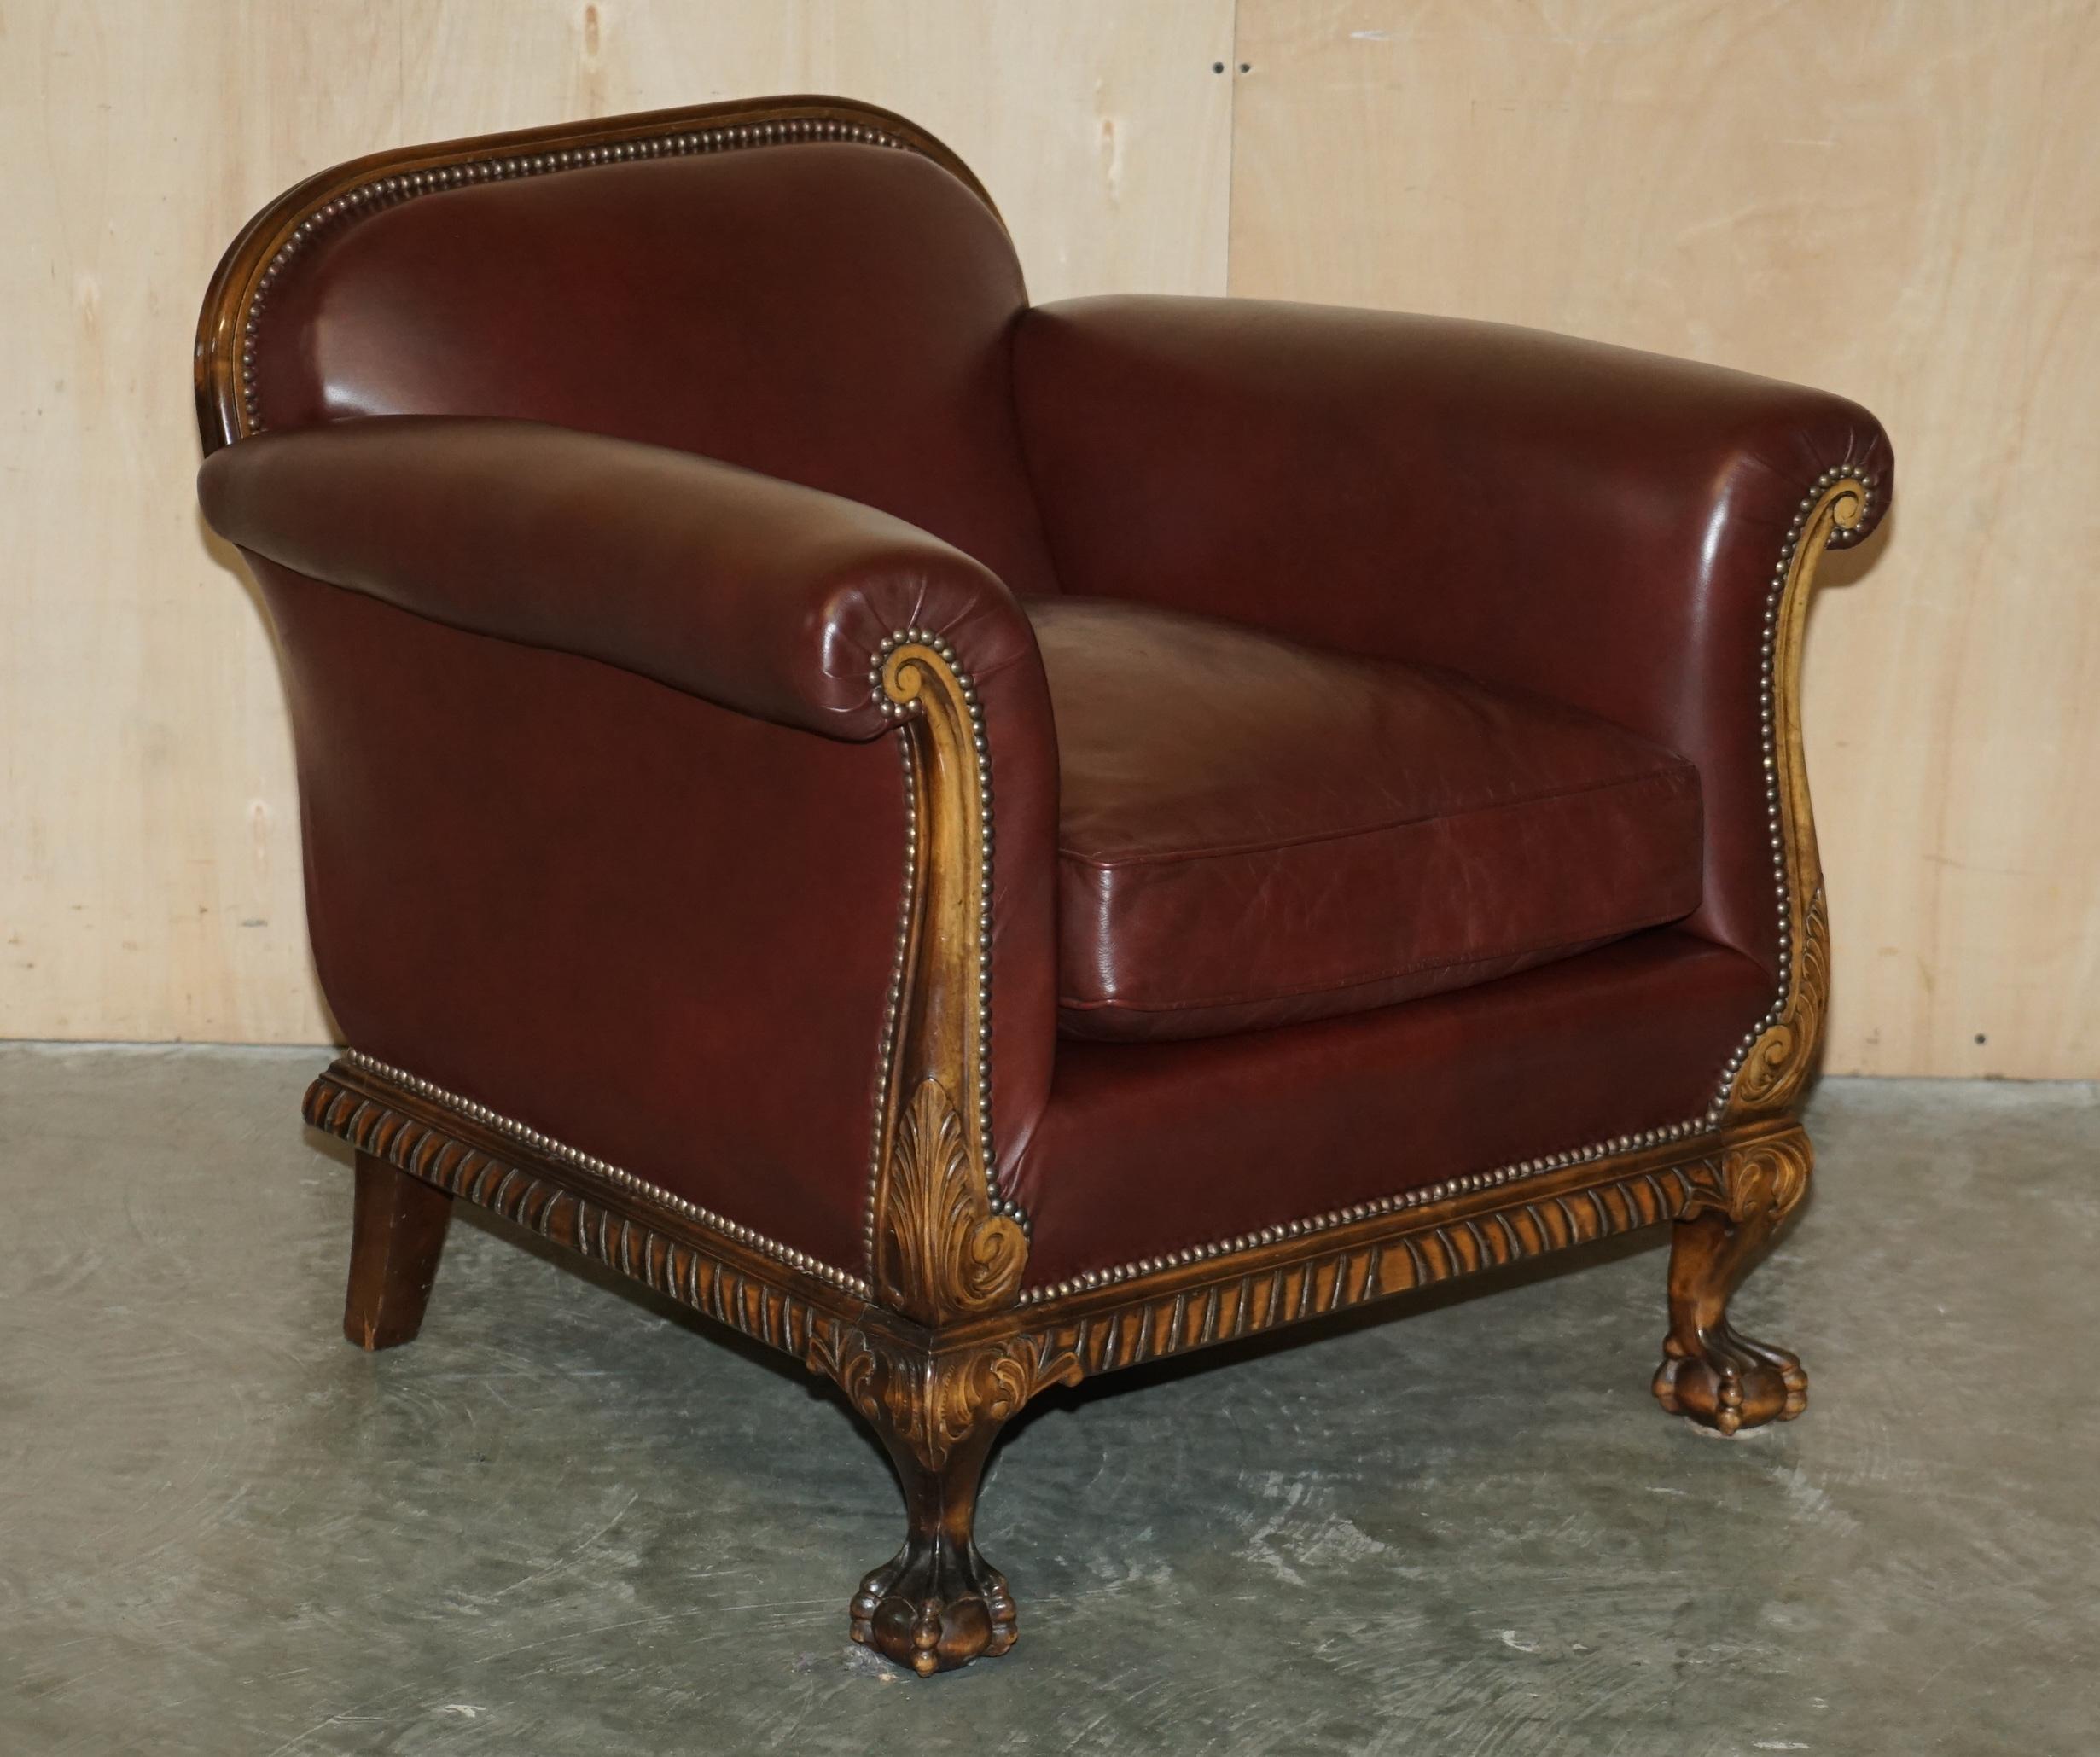 Wir freuen uns, zum Verkauf dieser atemberaubenden Paar antike viktorianische circa 1880 handgefertigt in England Sessel mit handgeschnitzten Walnuss Klaue & Ball Füße Feder gefüllt Kissen bieten.

Sie sehen nicht nur gut aus, sind gut verarbeitet